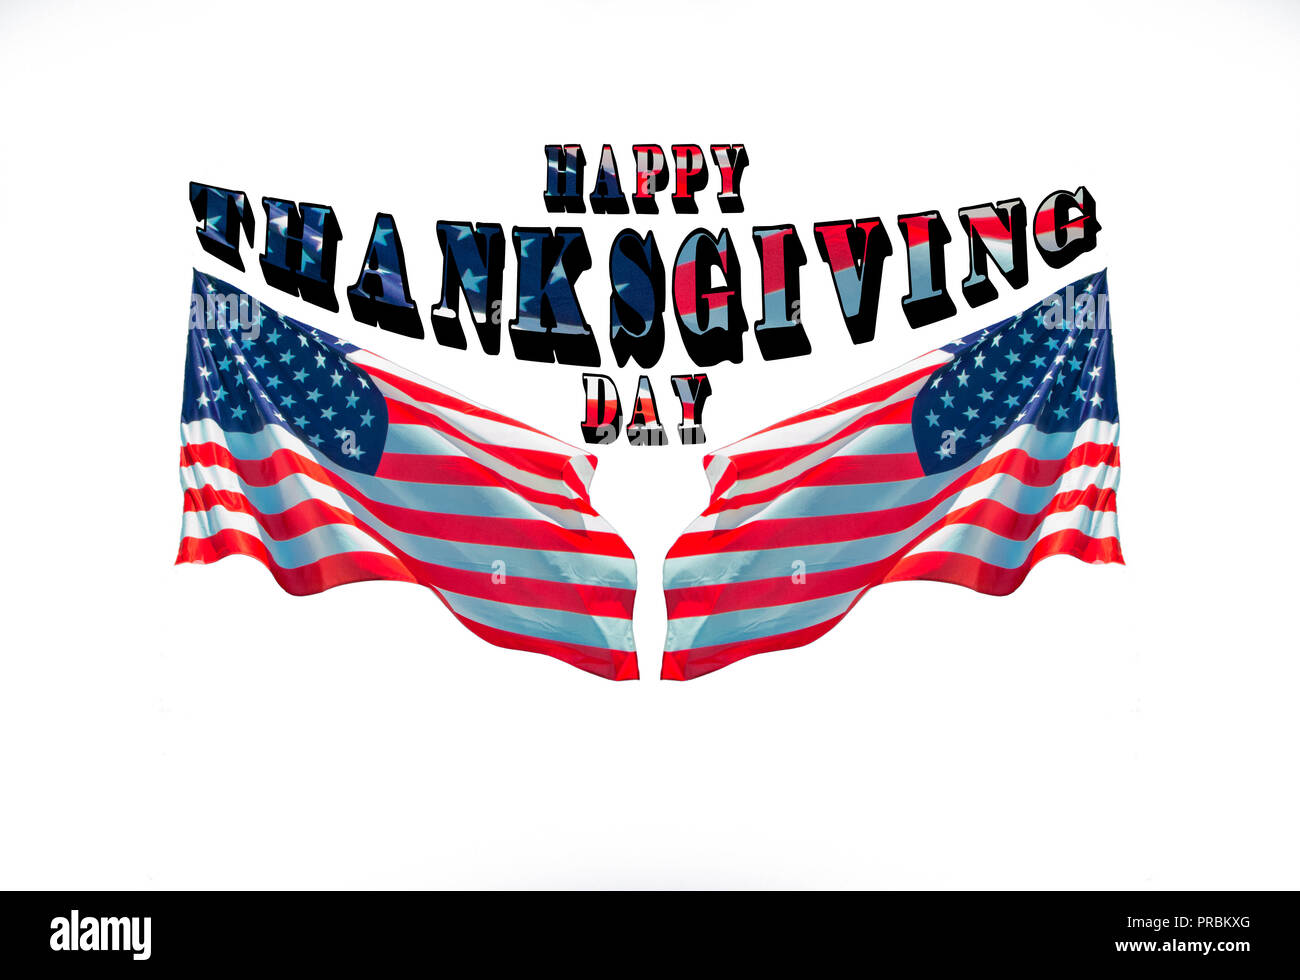 Happy Thanksgiving day journée avec deux drapeaux américains, usa journée traditionnelle Banque D'Images